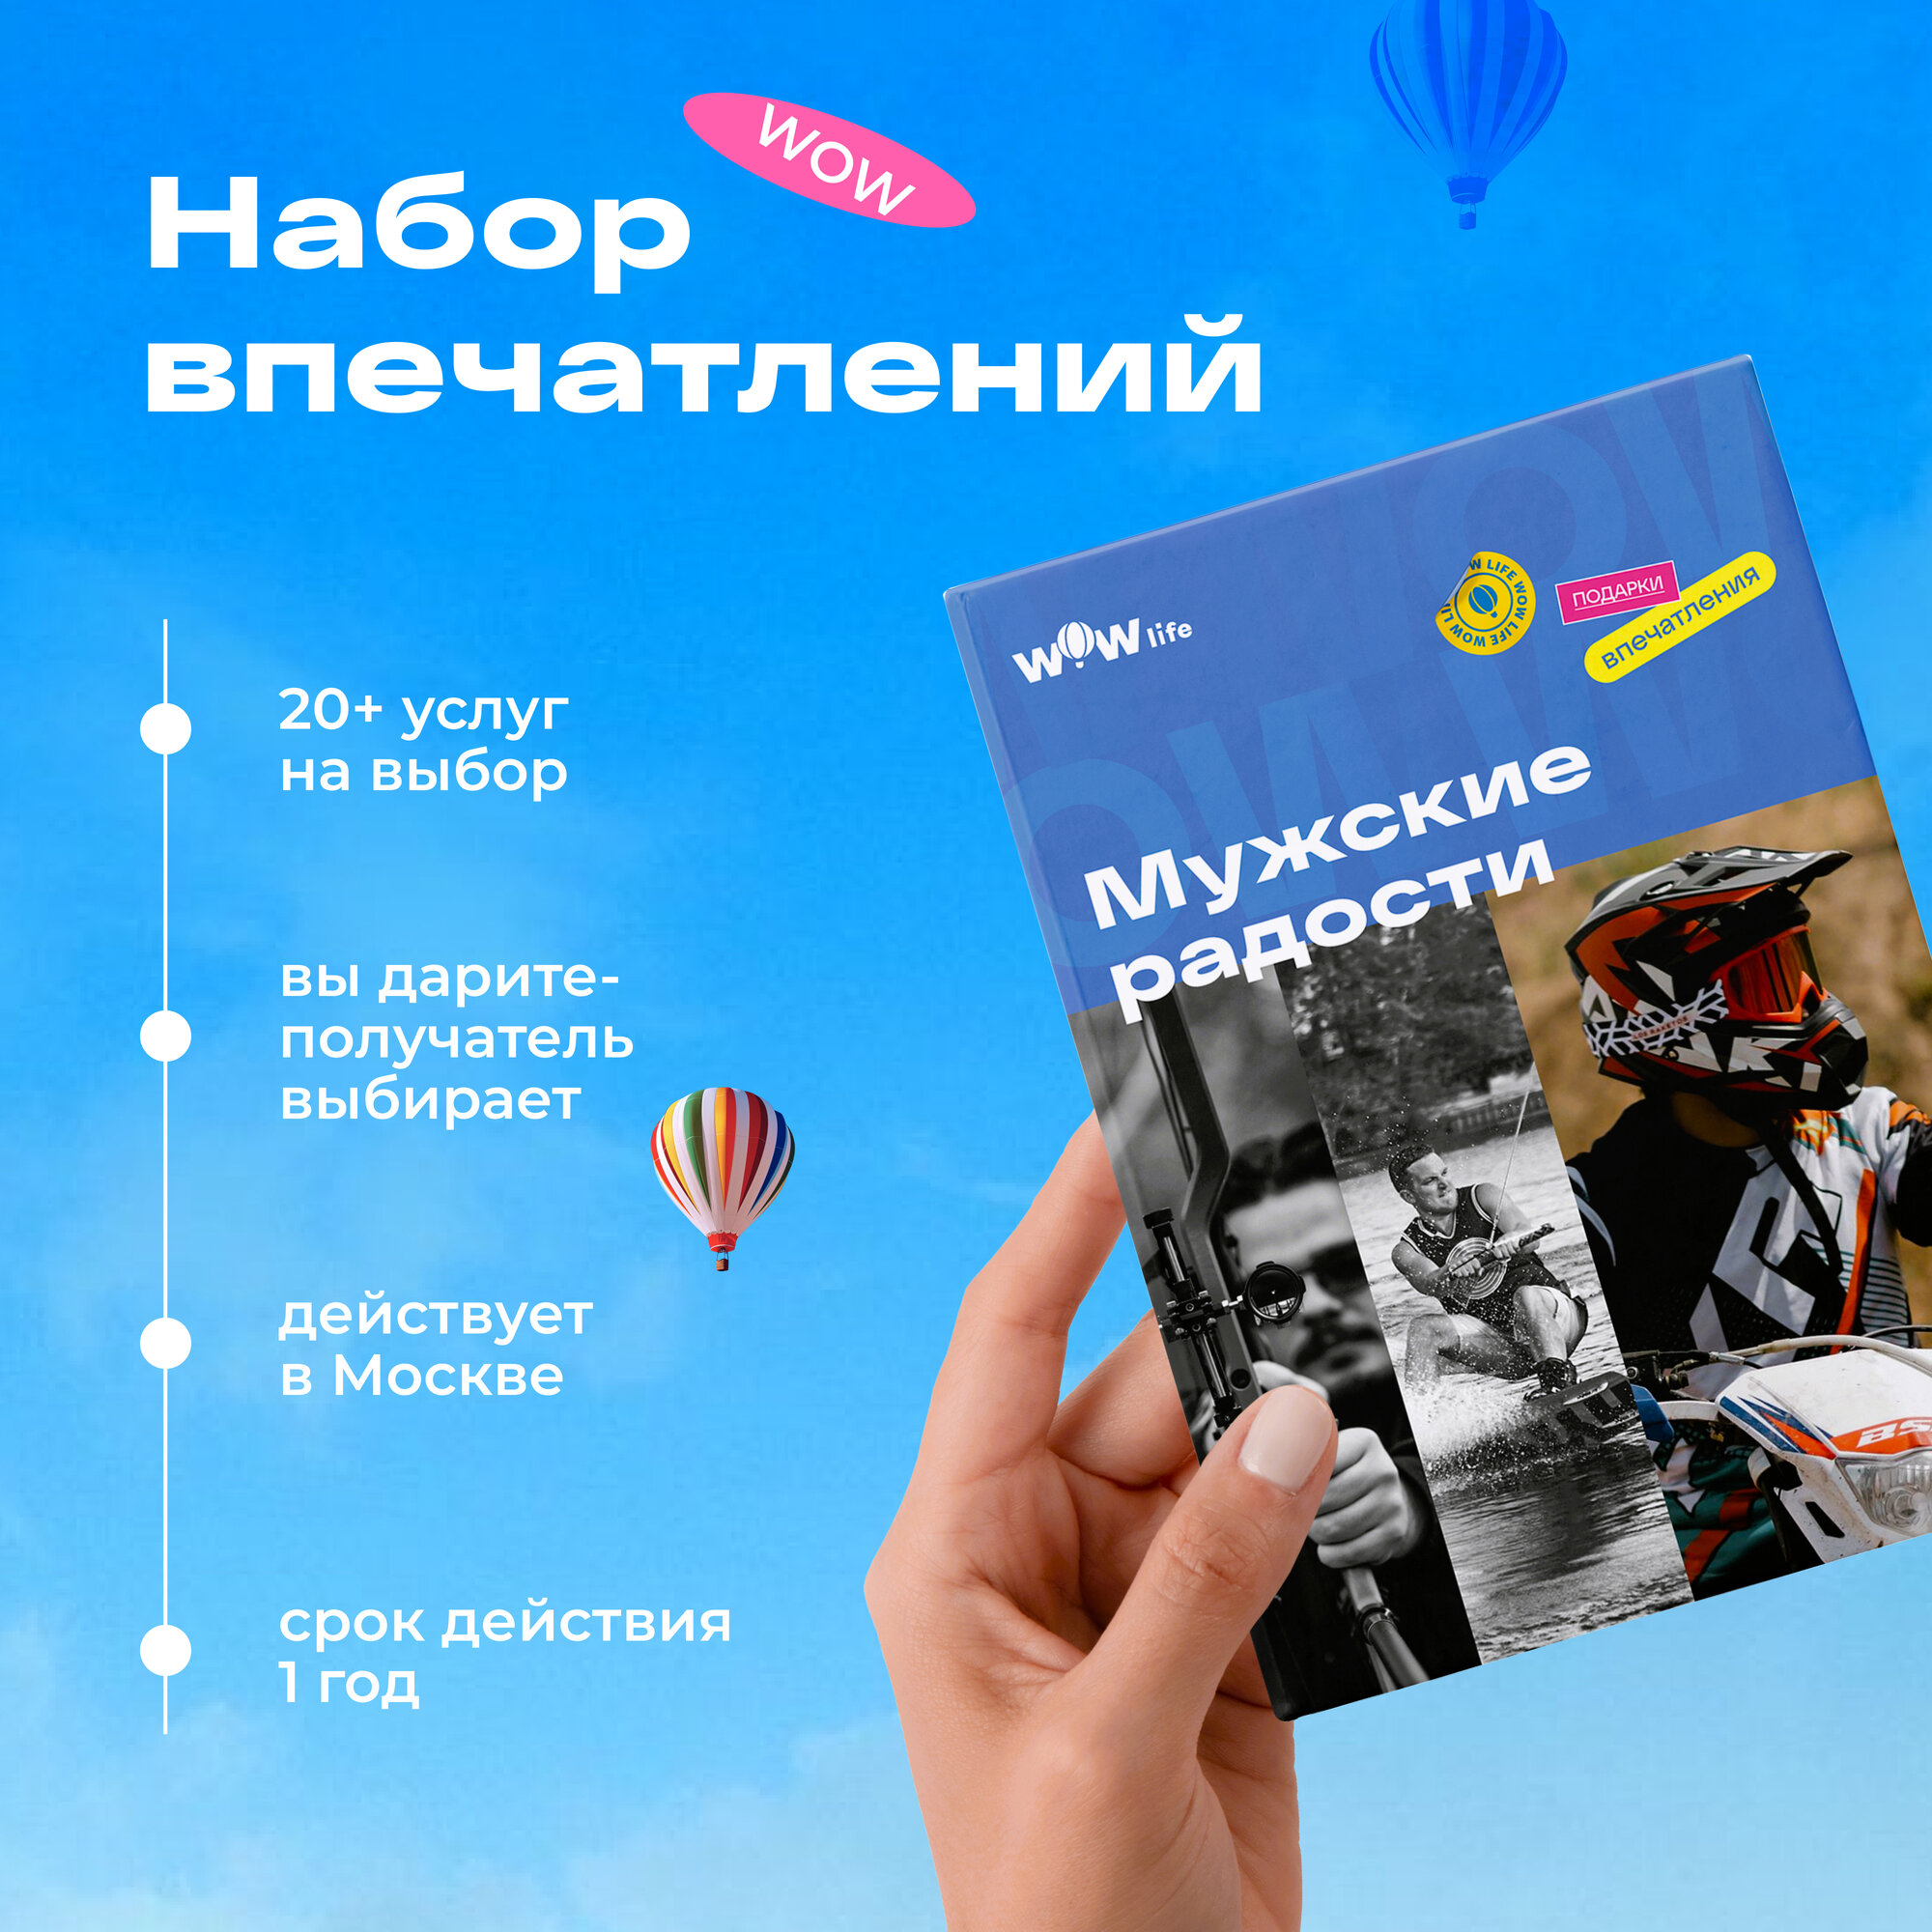 Подарочный сертификат WOWlife "Мужские радости" - набор из впечатлений на выбор, Москва